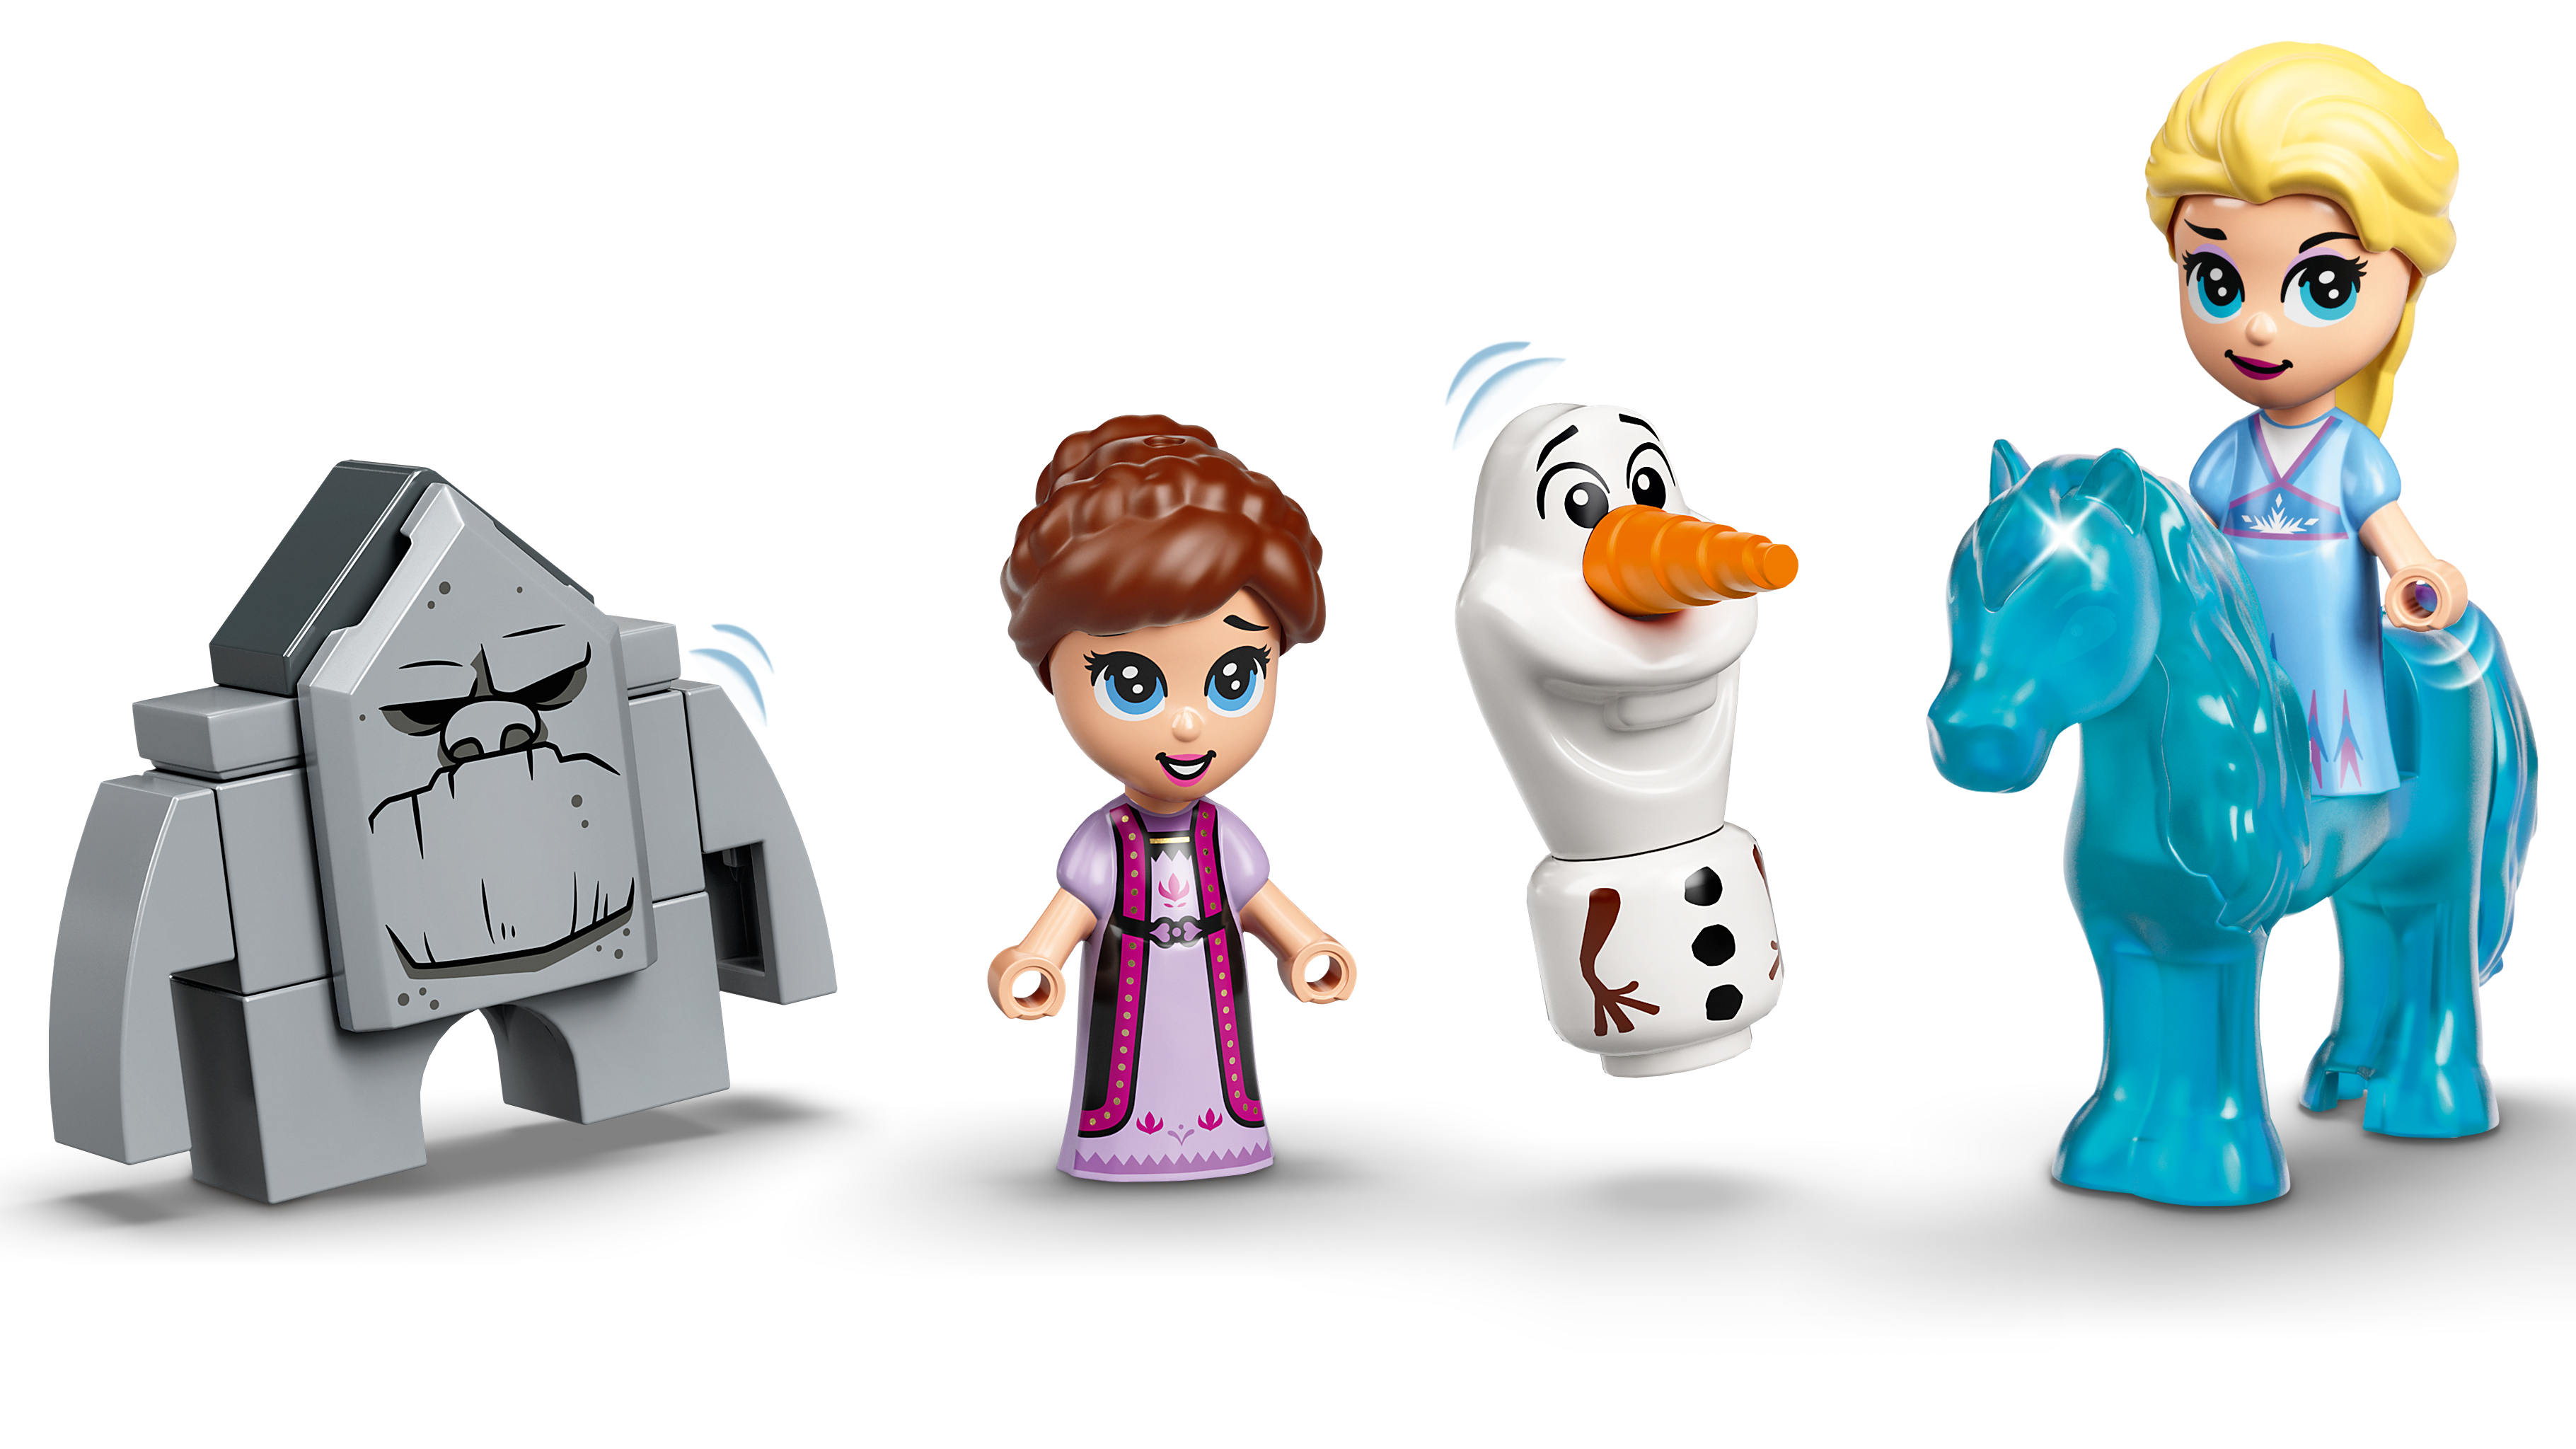 Les aventures d'Elsa et Nokk dans un livre de contes - LEGO® Disney  Princess - 43189 - Jeux de construction